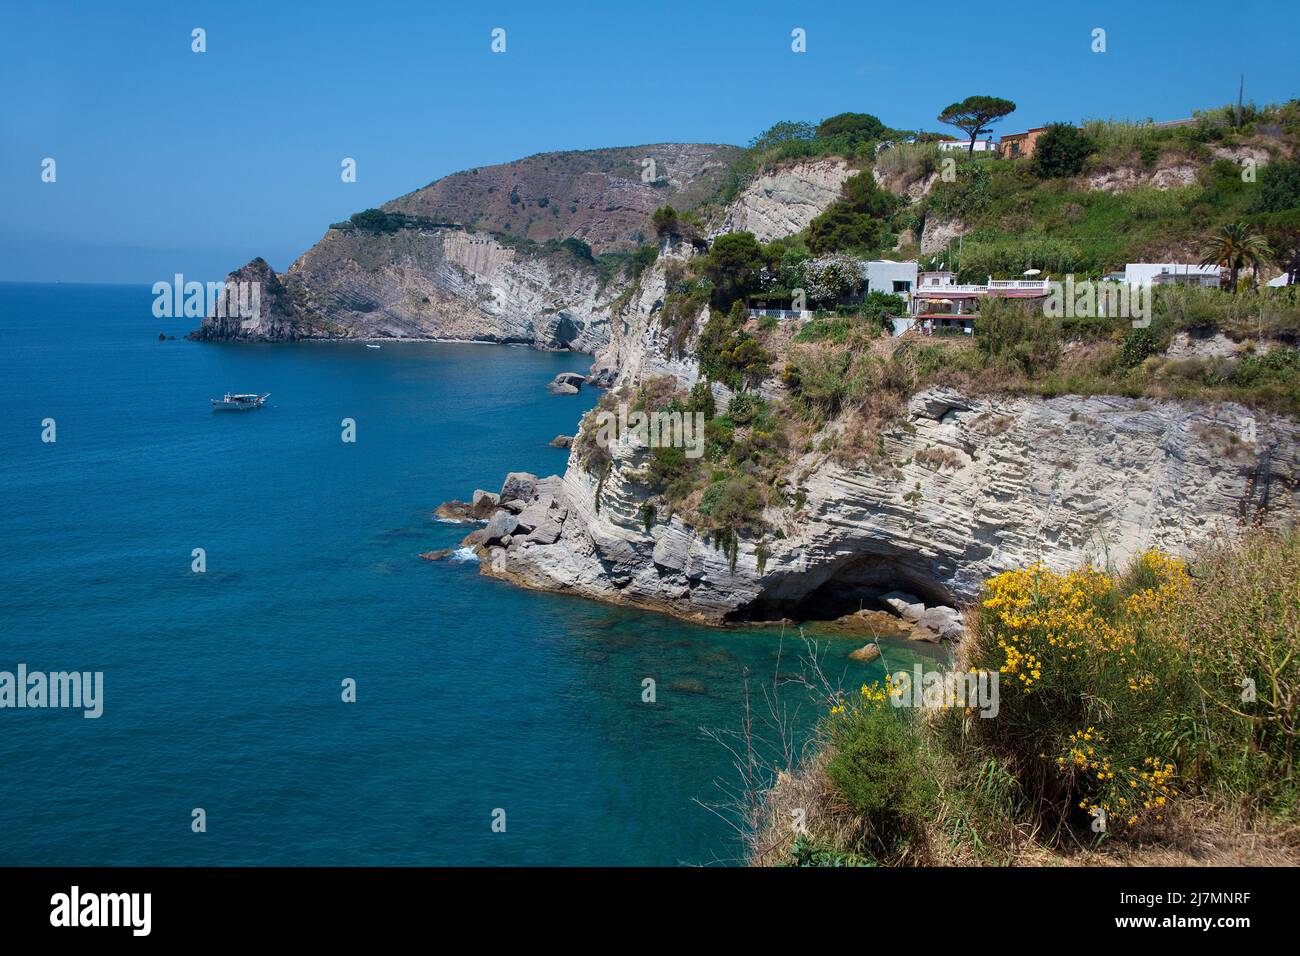 Blick auf die malerische Kueste beim Fischerdorf Sant' Angelo, Ischia, Golf von Neapel, Kampanien, Italien, Mittelmeer, Europ Stock Photo